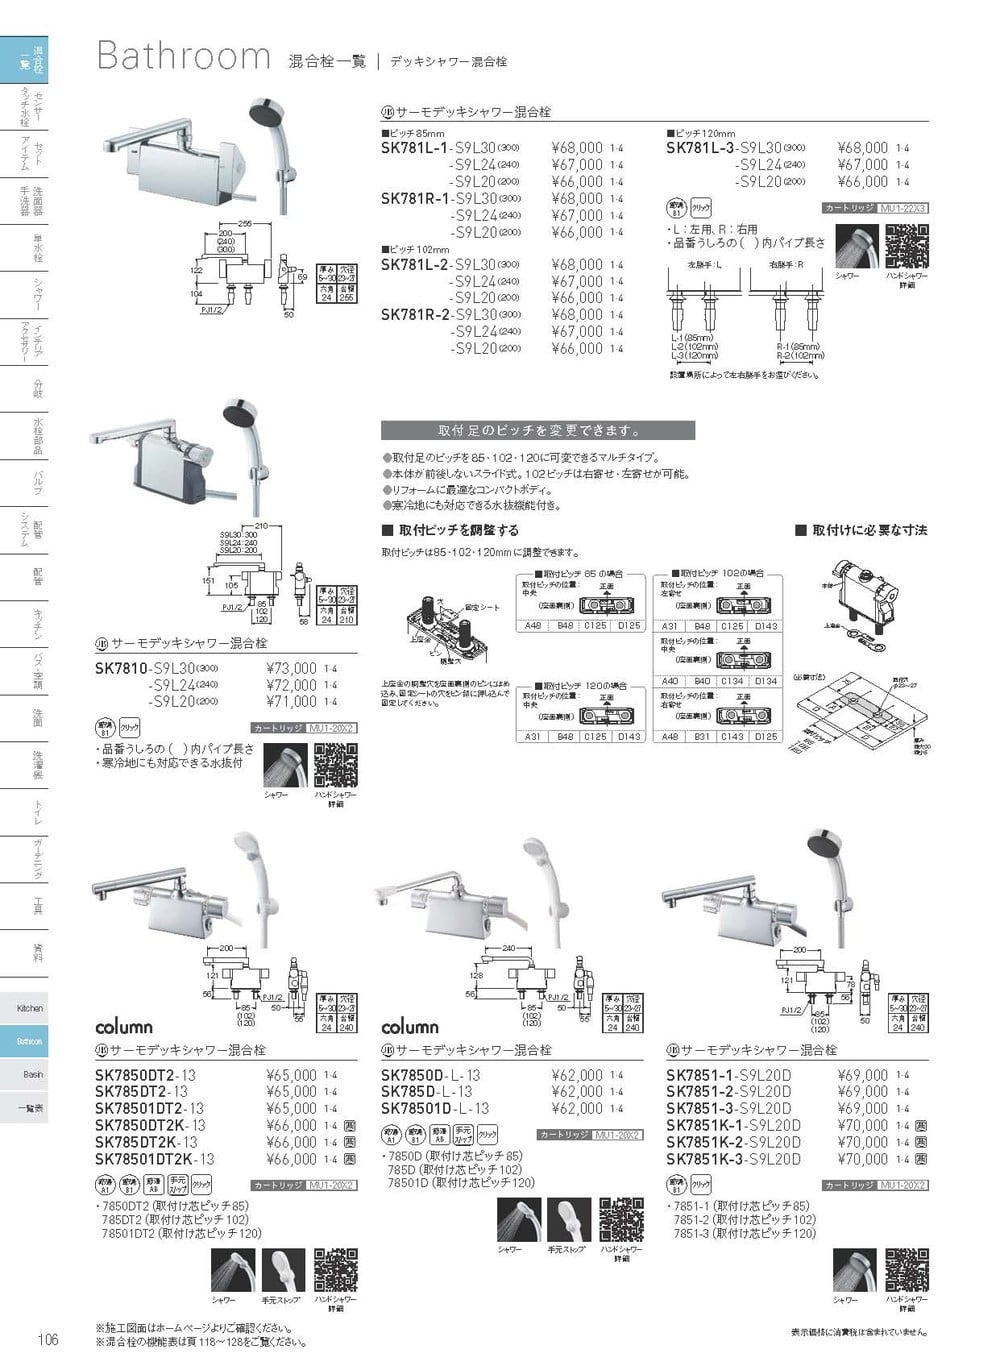 SANEI サーモデッキシャワー混合栓 SK7810-S9L30 (パイプの長さ300mm) - 3